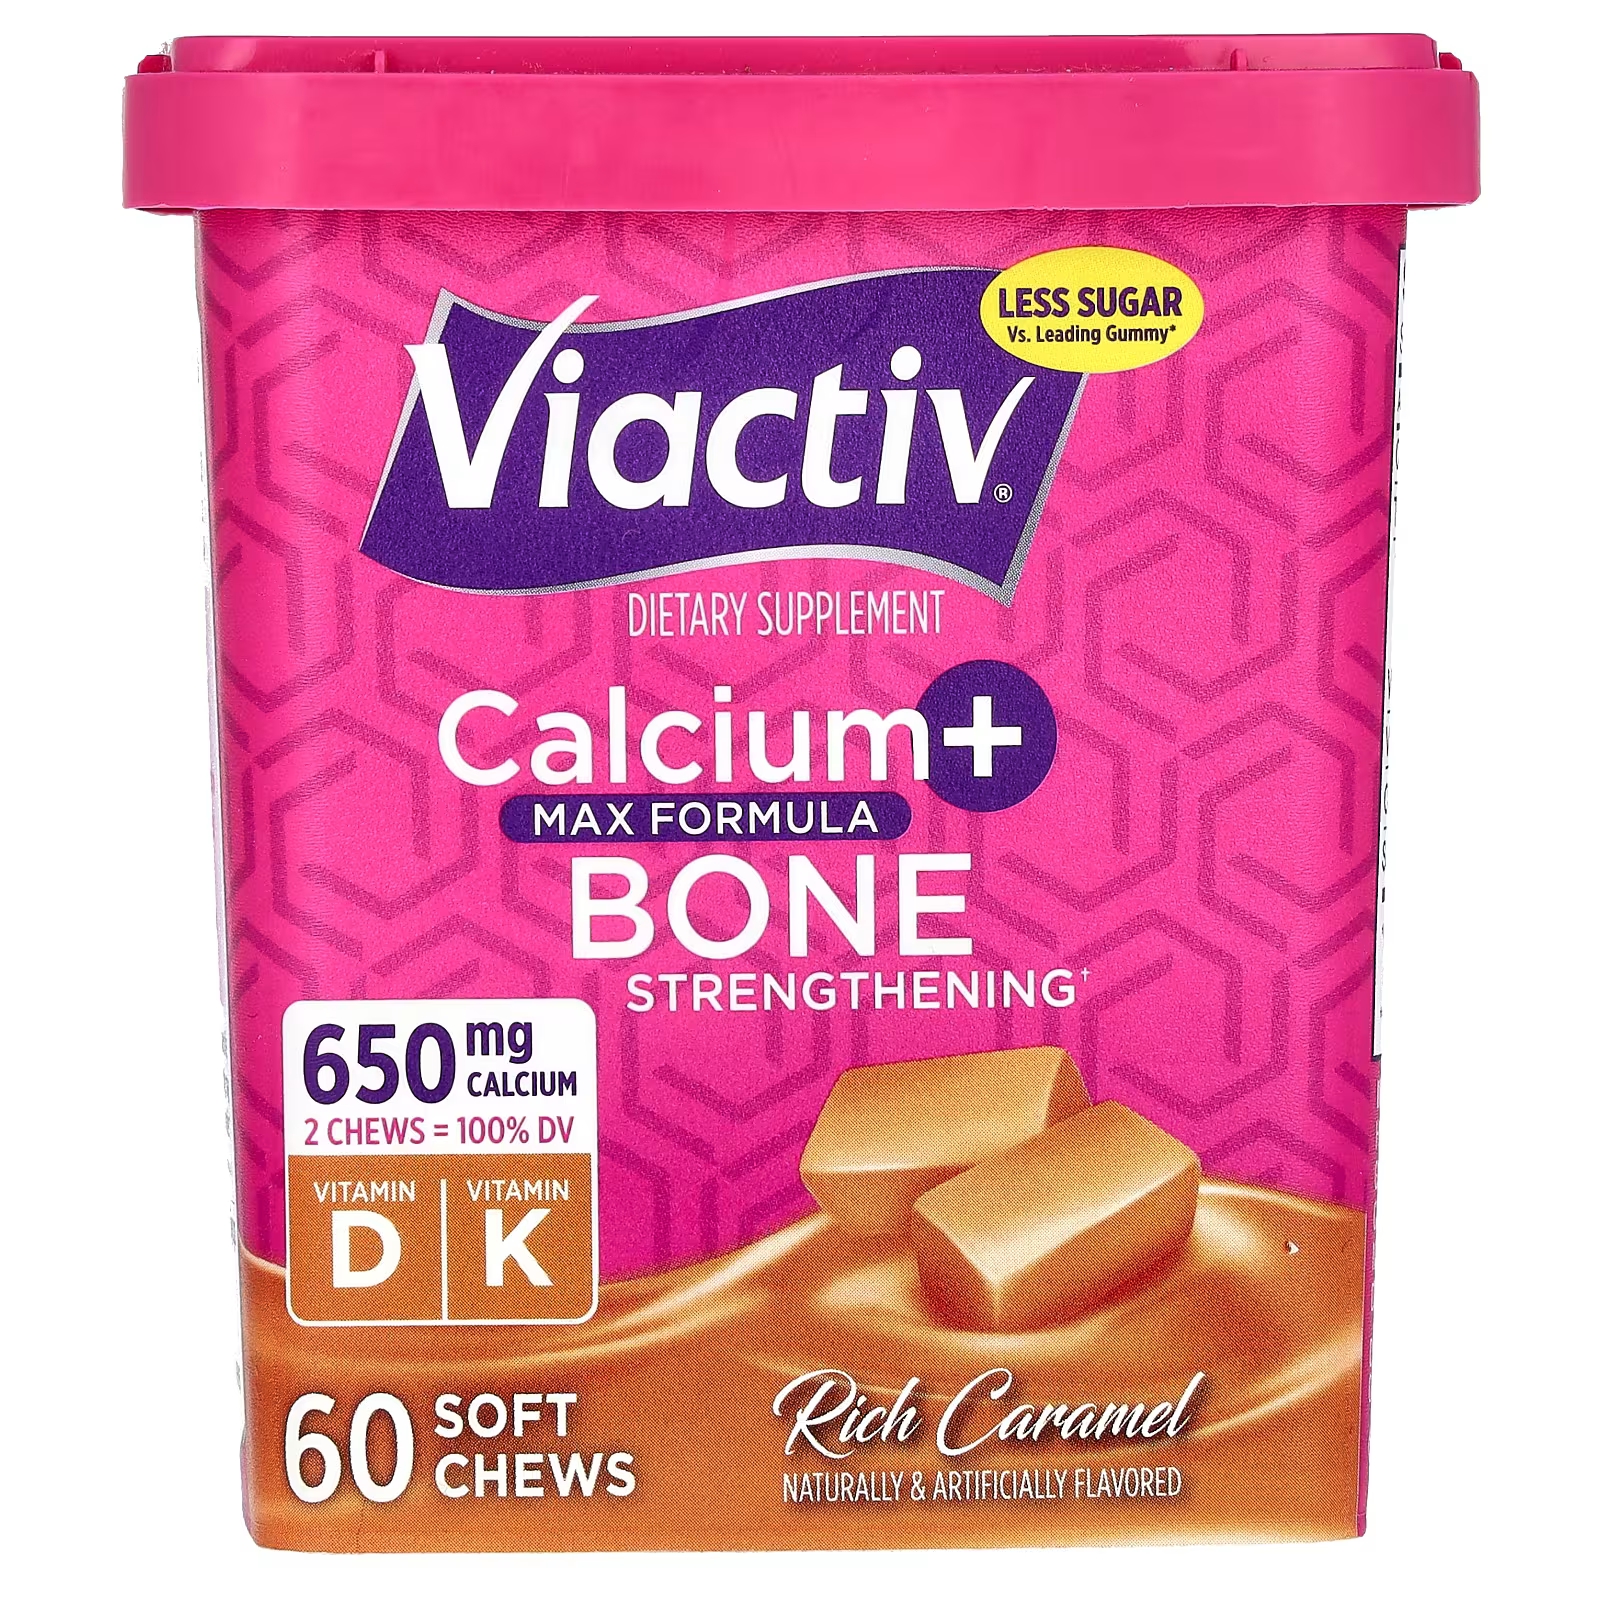 цена Кальций Viactiv + укрепление костей Max Formula Rich Caramel, 60 мягких жевательных таблеток